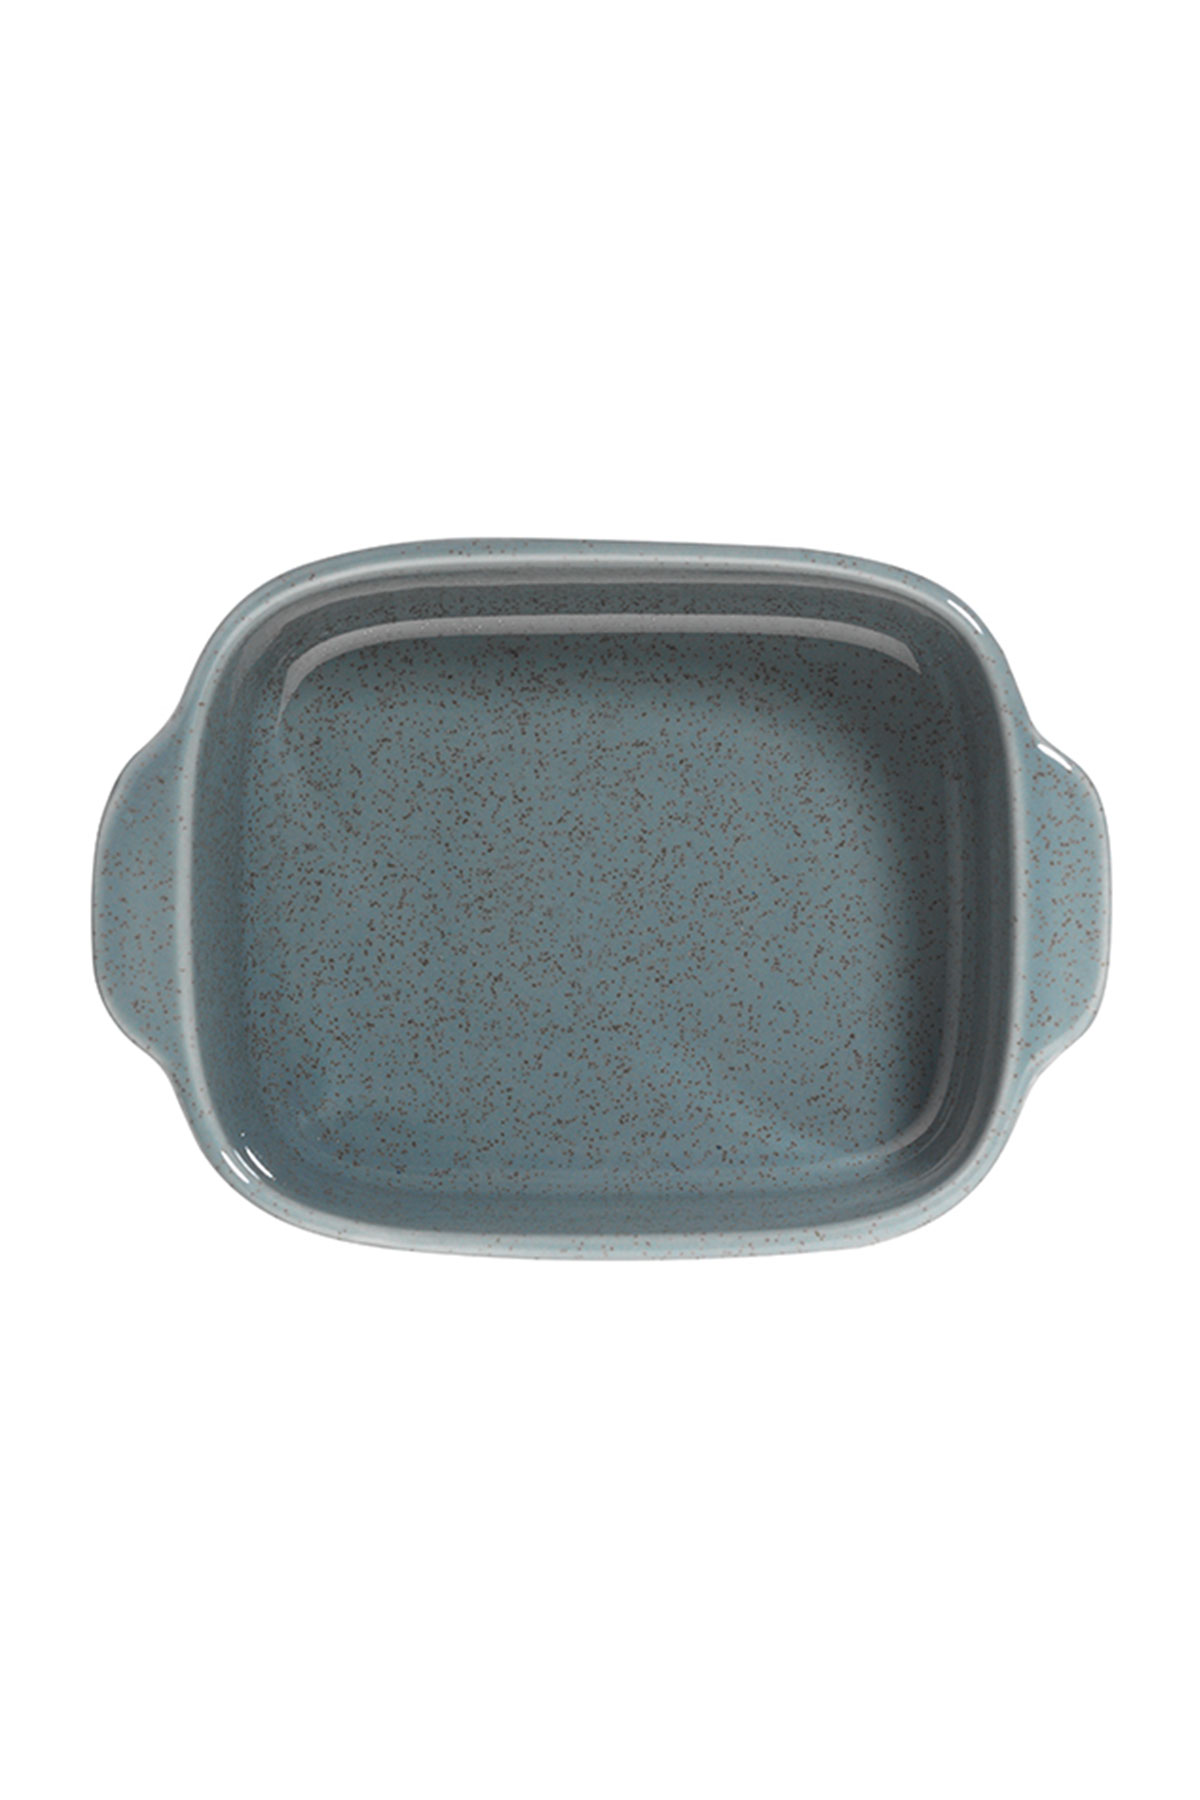 Kütahya Porselen Cookwell 2 Parça 15 Cm Fırın Kabı Mavi